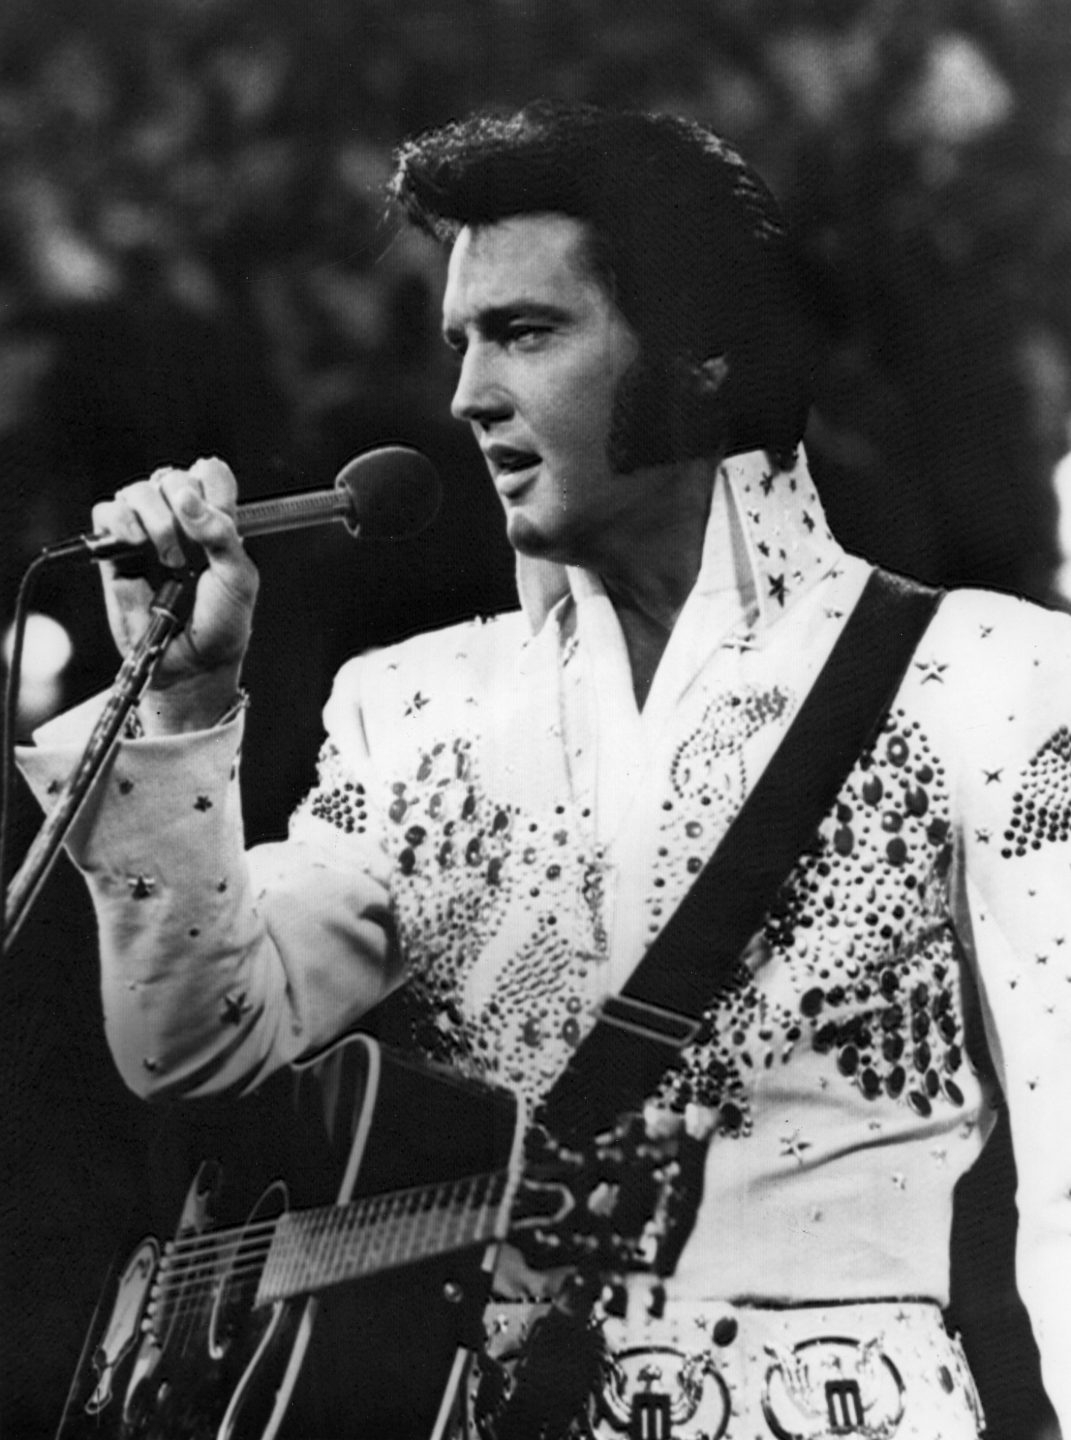 Fotografía de archivo sin fecha del cantante estadounidense Elvis Presley durante una presentación.